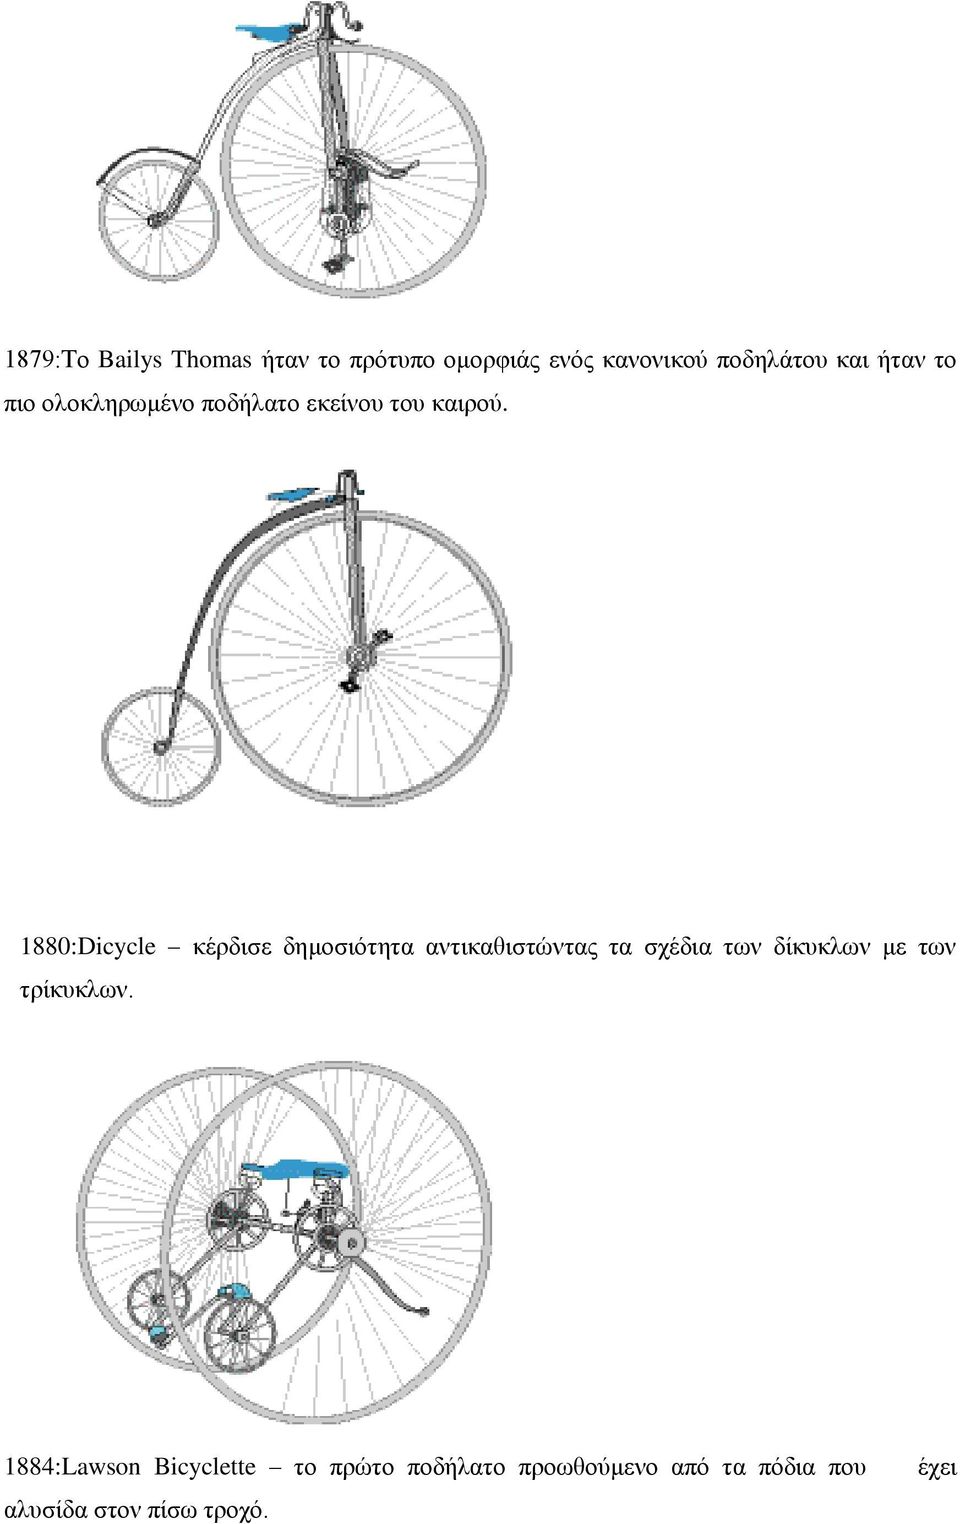 1880:Dicycle κέρδισε δημοσιότητα αντικαθιστώντας τα σχέδια των δίκυκλων με των